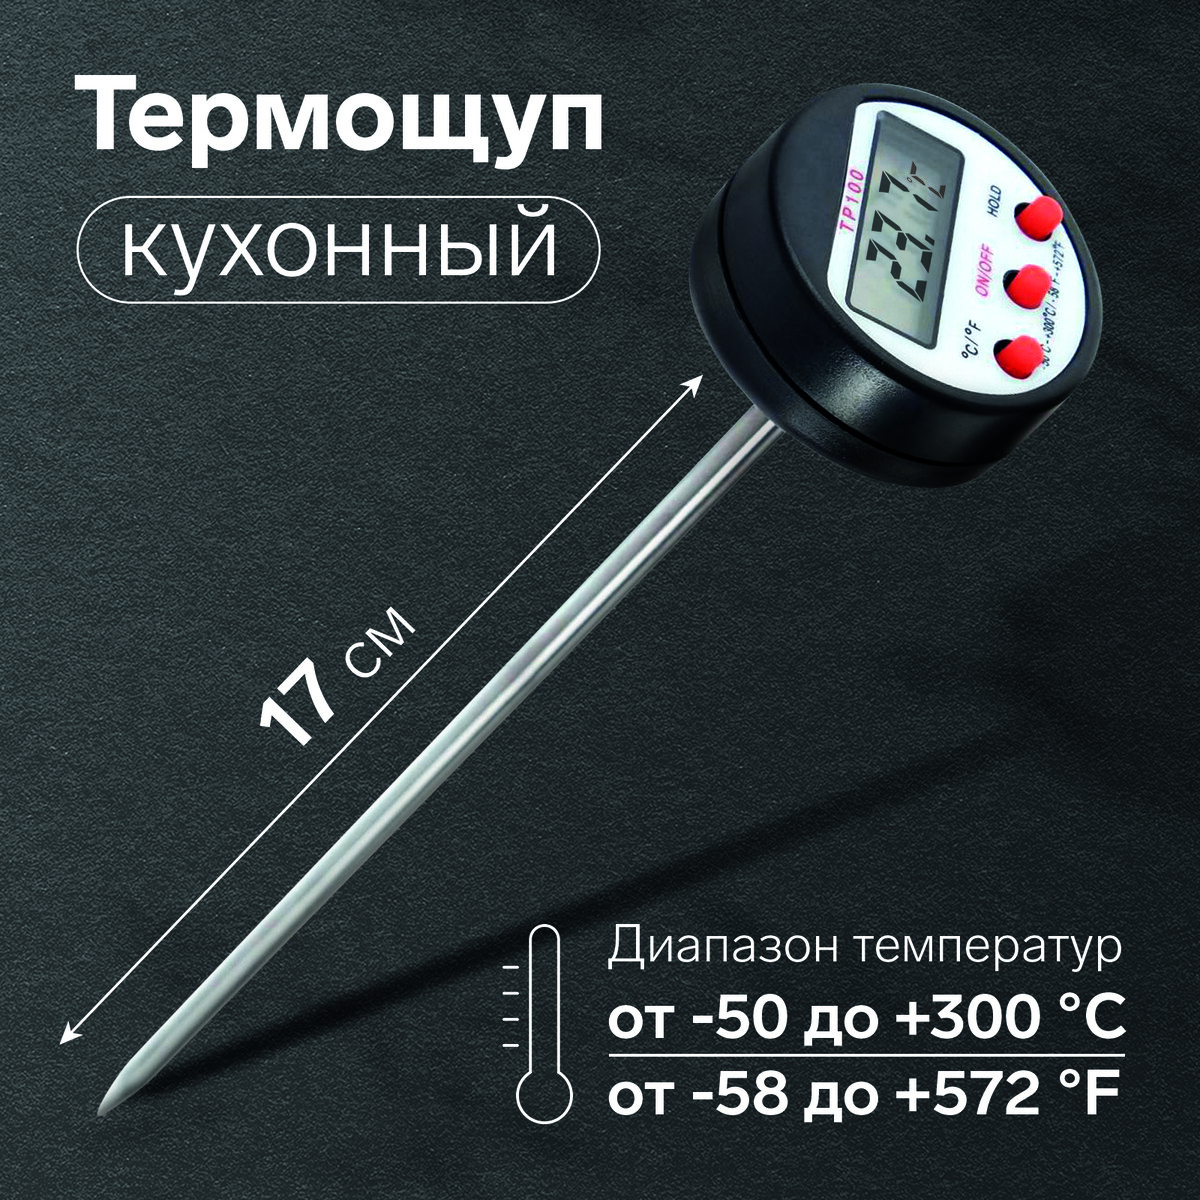 Термощуп кухонный tp-100, максимальная температура 300 °c, от lr44, черный термощуп кухонный ltp 001 максимальная температура 200 °c от батареек lr44